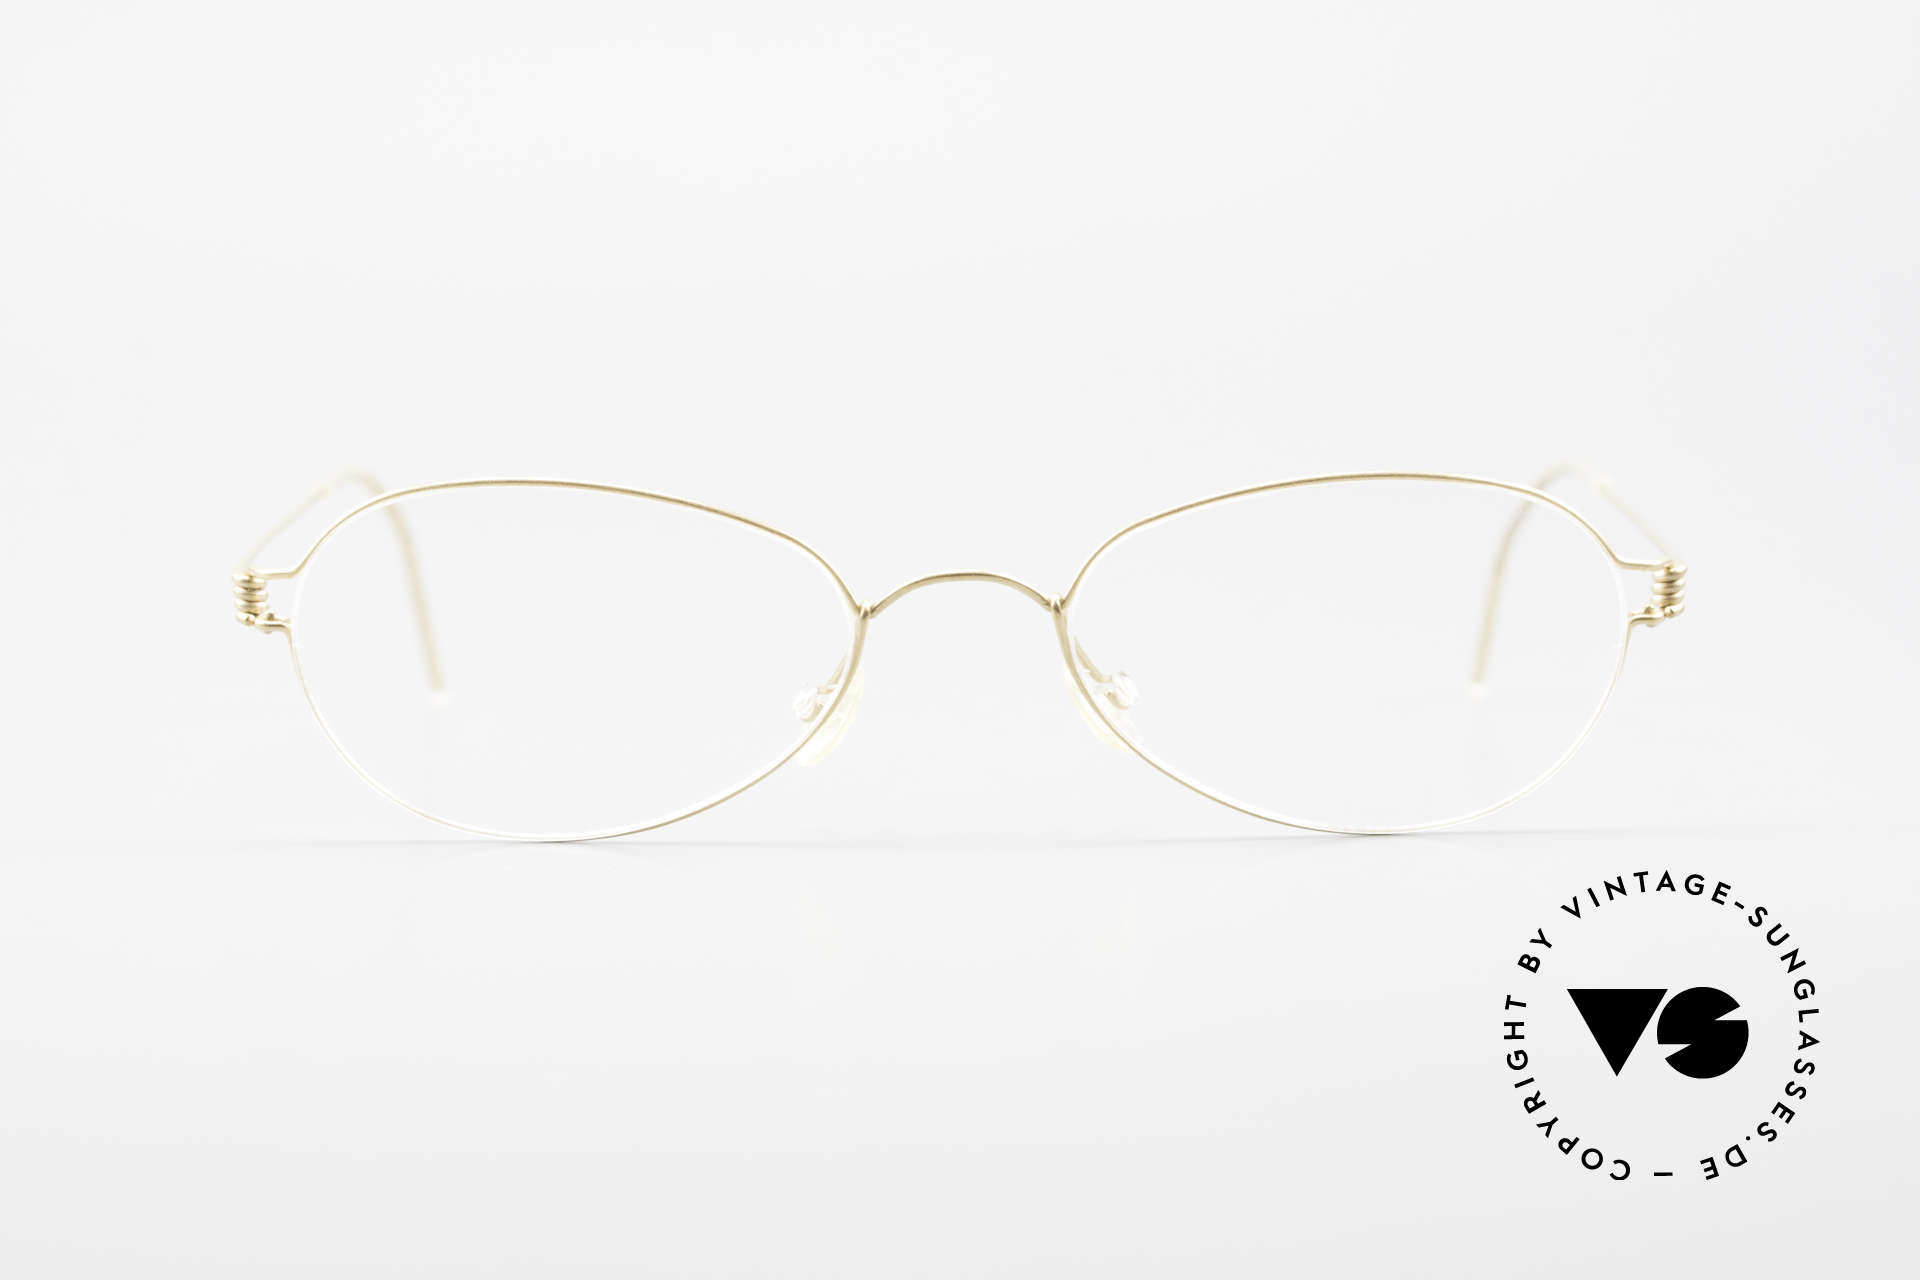 Lindberg Kari Air Titan Rim Ovale Titanium Brille Damen, vielfach ausgezeichnet hinsichtlich Qualität und Design, Passend für Damen